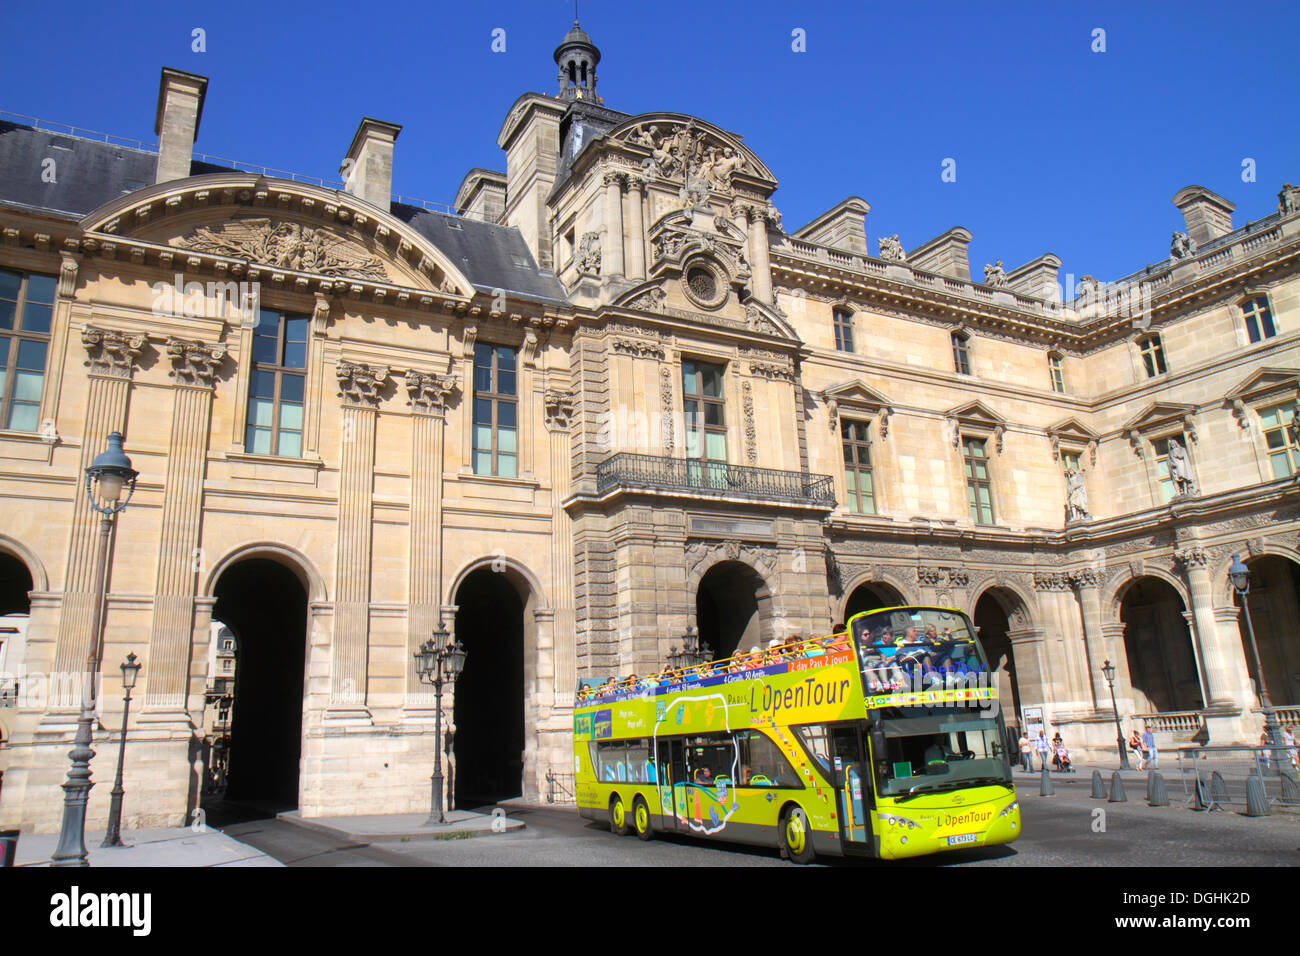 Paris France,1st arrondissement,Place du Carrousel,Musée du Louvre,The Louvre Museum,Palace,bus,coach,charter,double decker,France130820116 Stock Photo